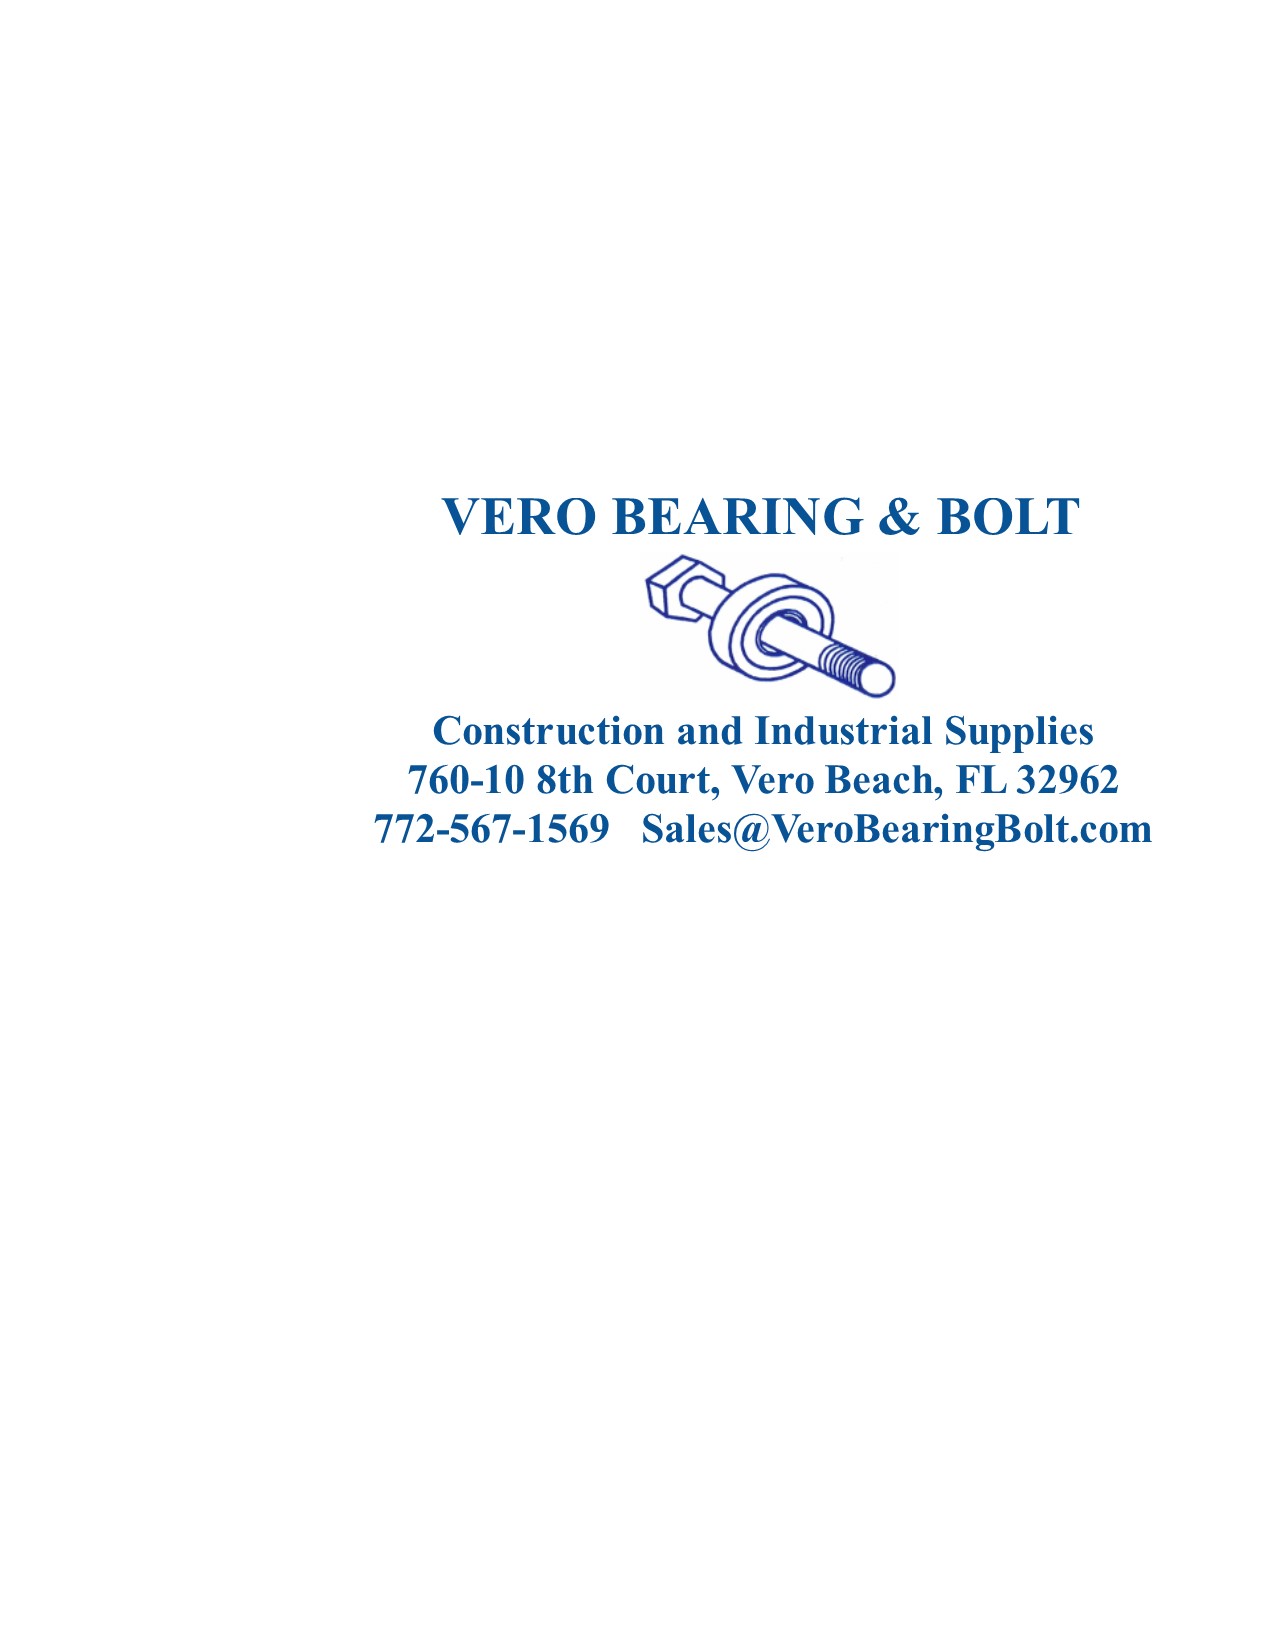 Vero Bearing and Bolt